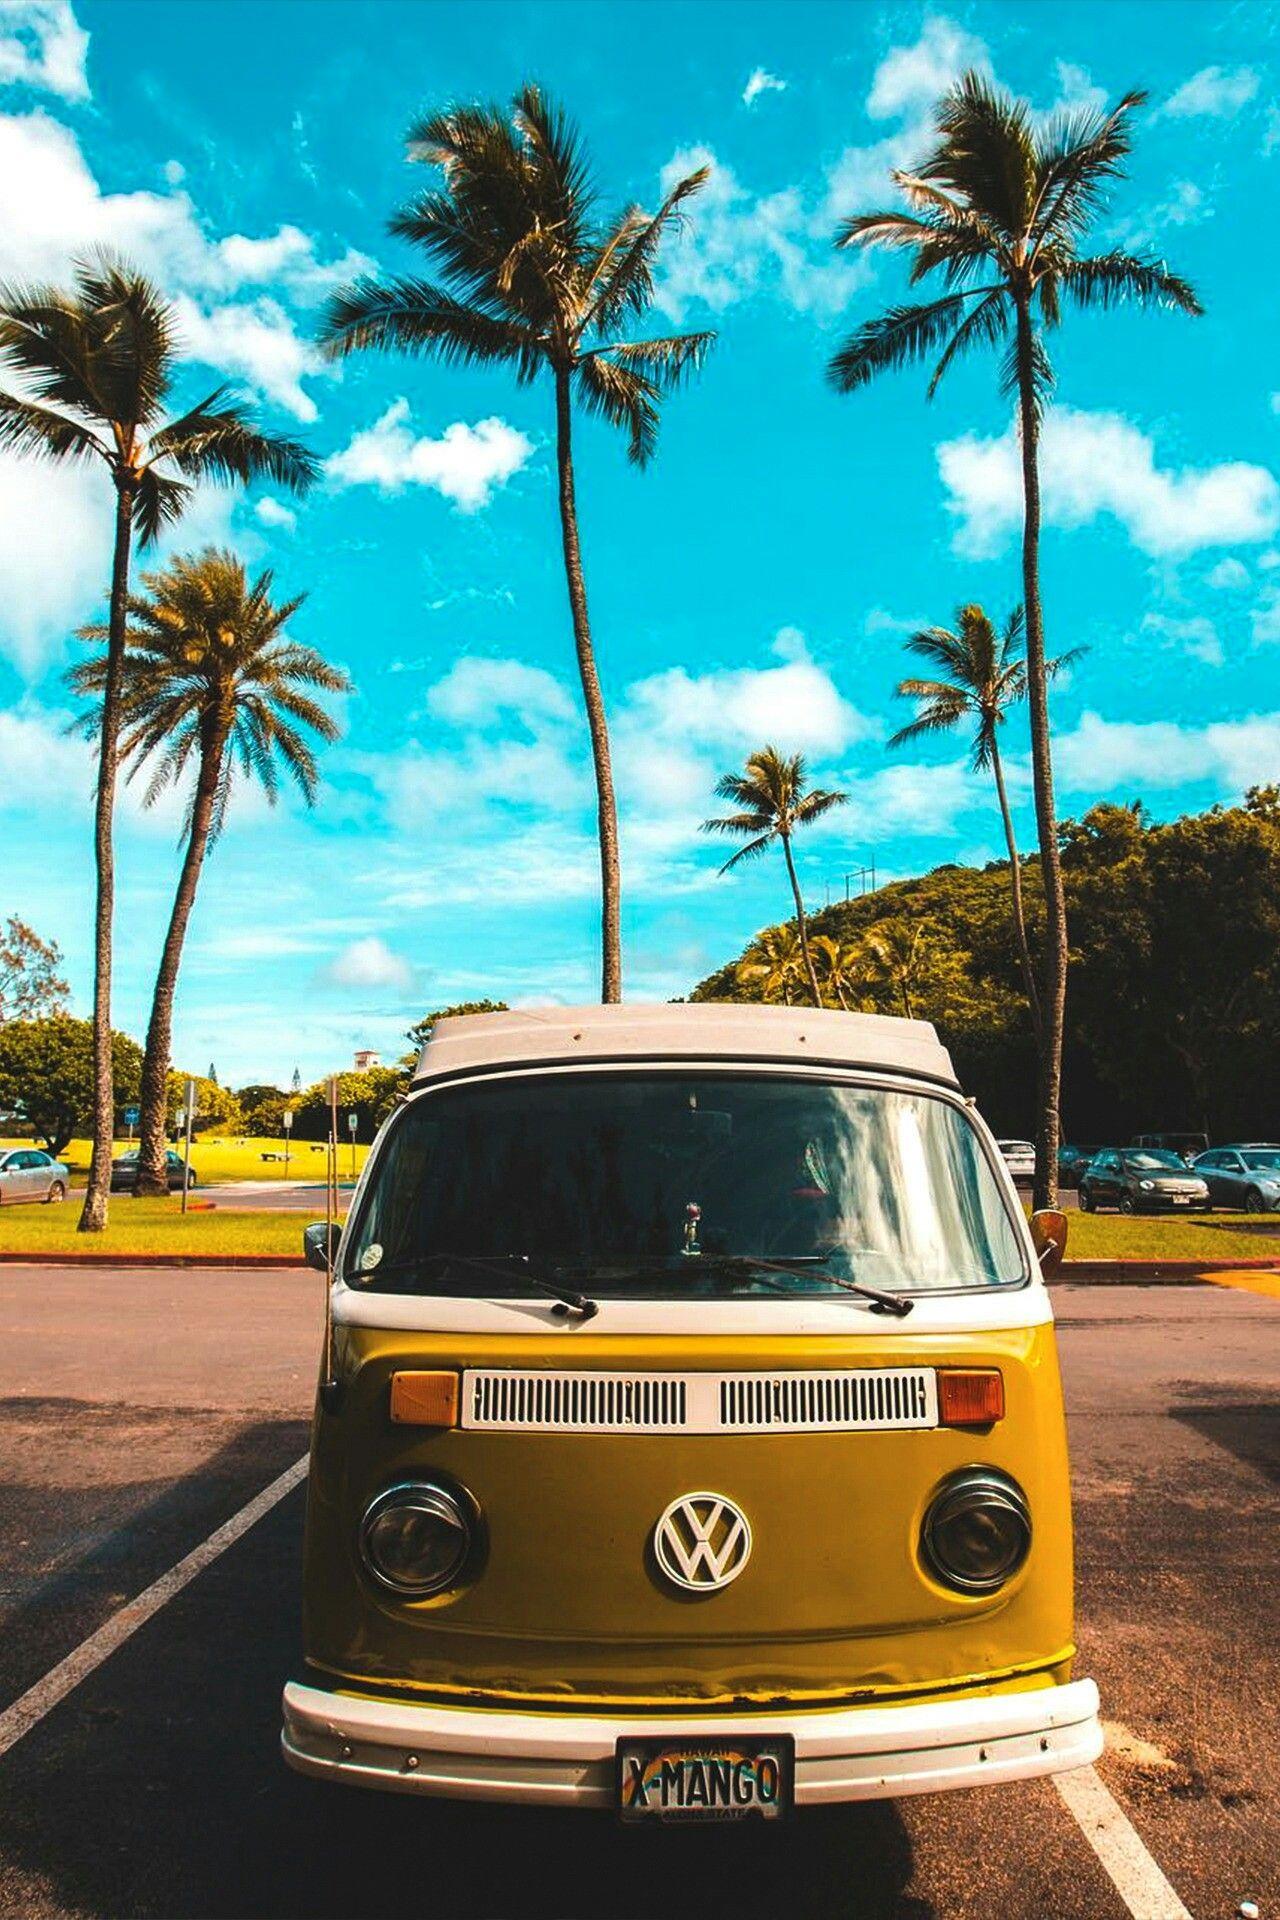 Volkswagen Van Wallpapers - Top Free Volkswagen Van Backgrounds